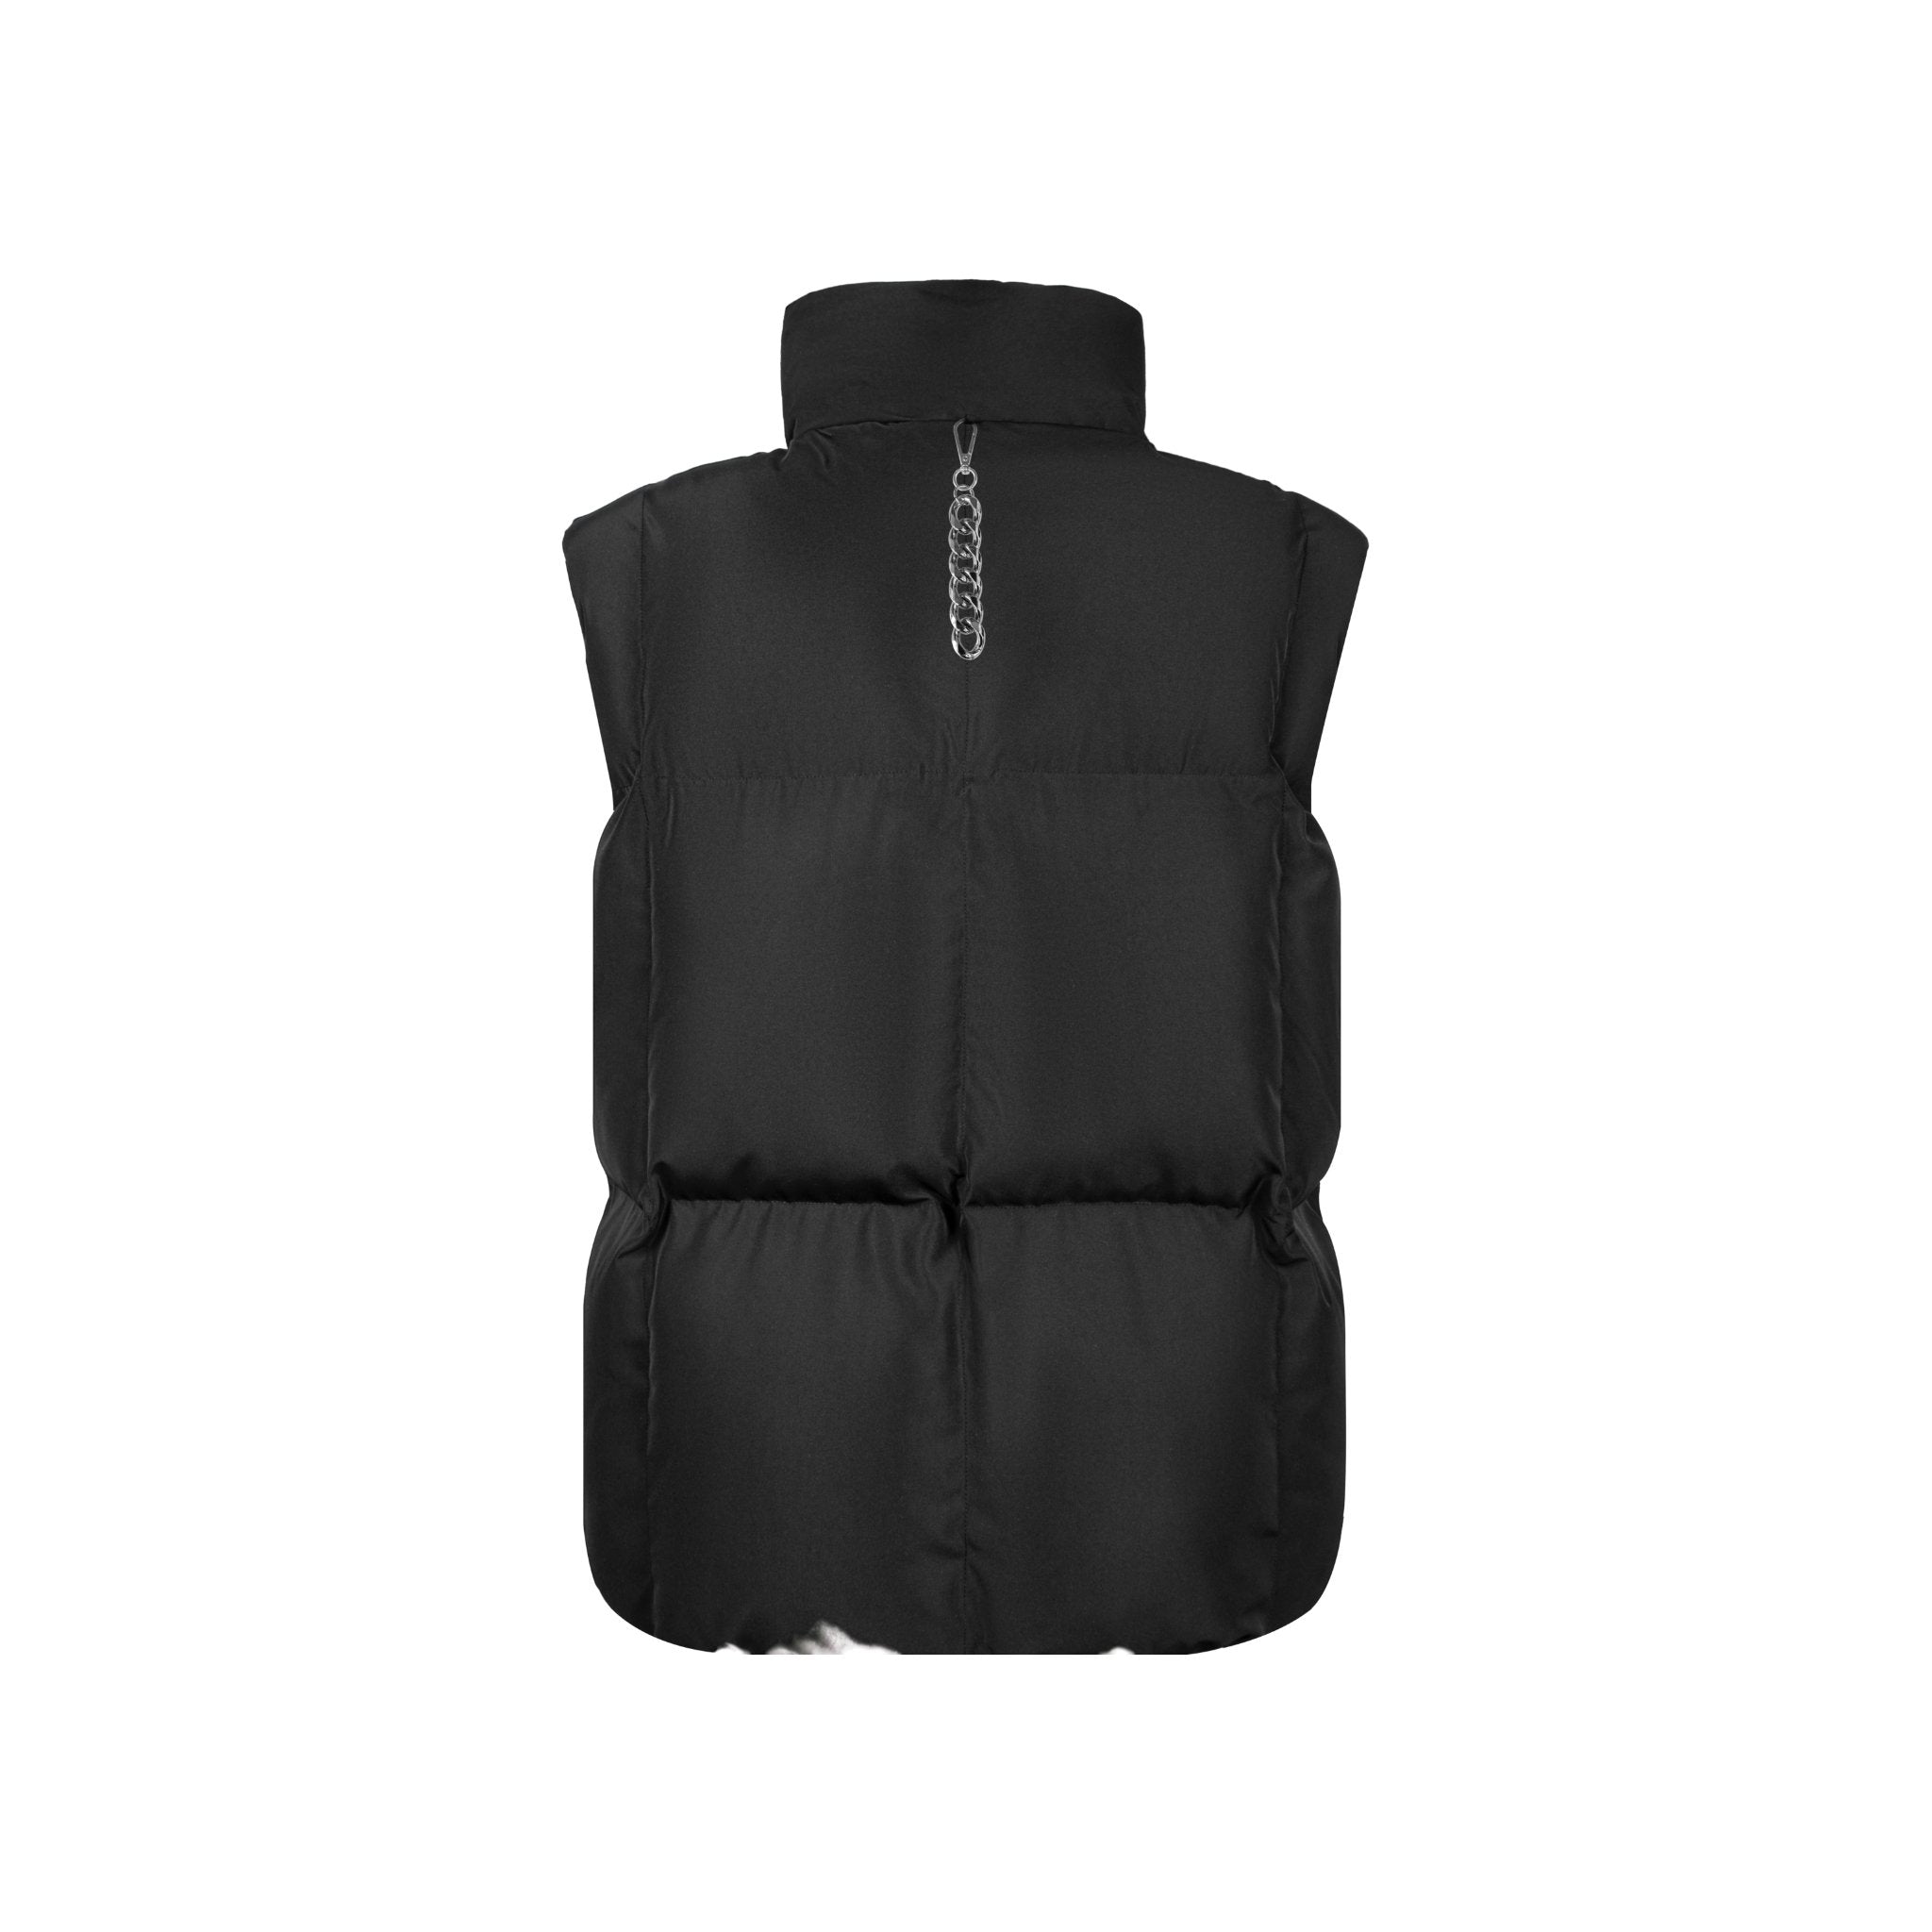 UNAWARES Black Square Velcro Cotton Vest | MADA IN CHINA